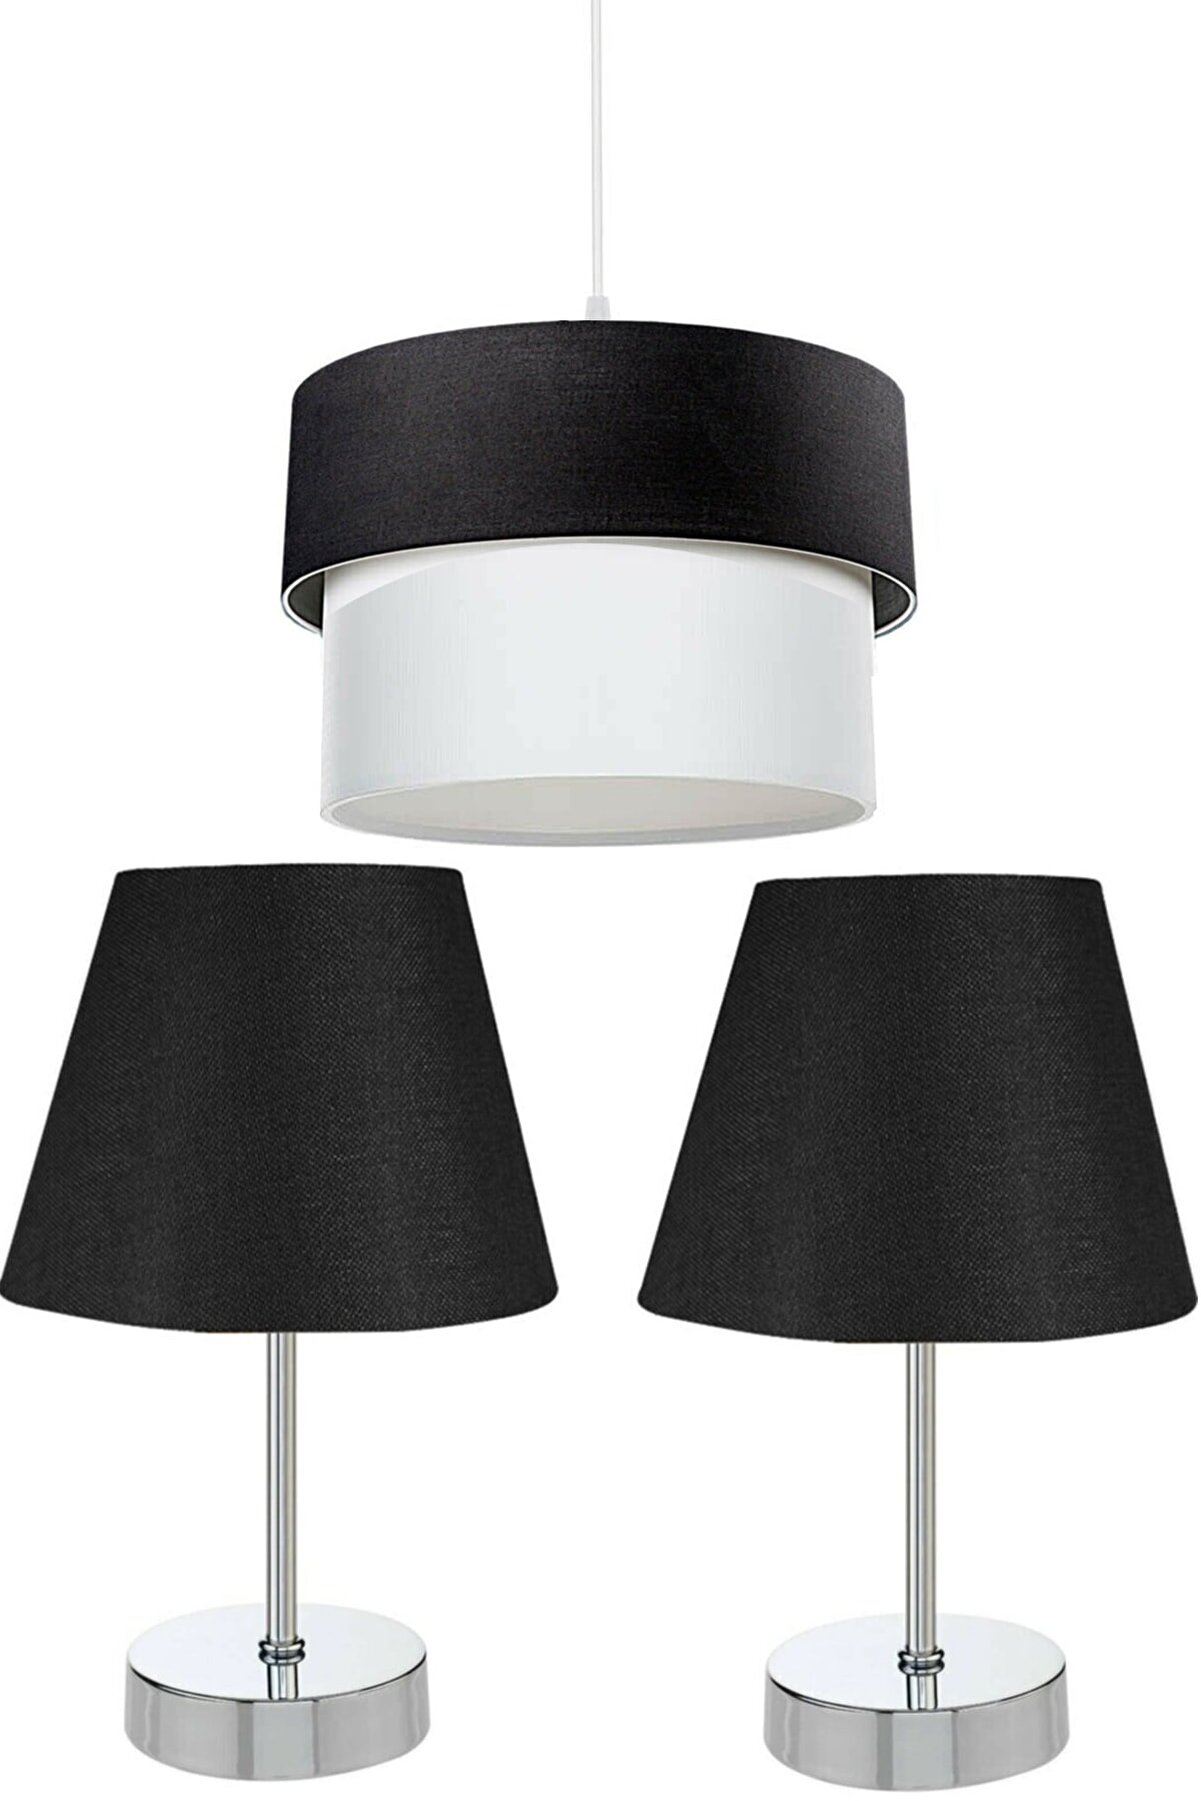 3'lu set 1 pcs Ceiling lighting/2 pcs Table Lamp